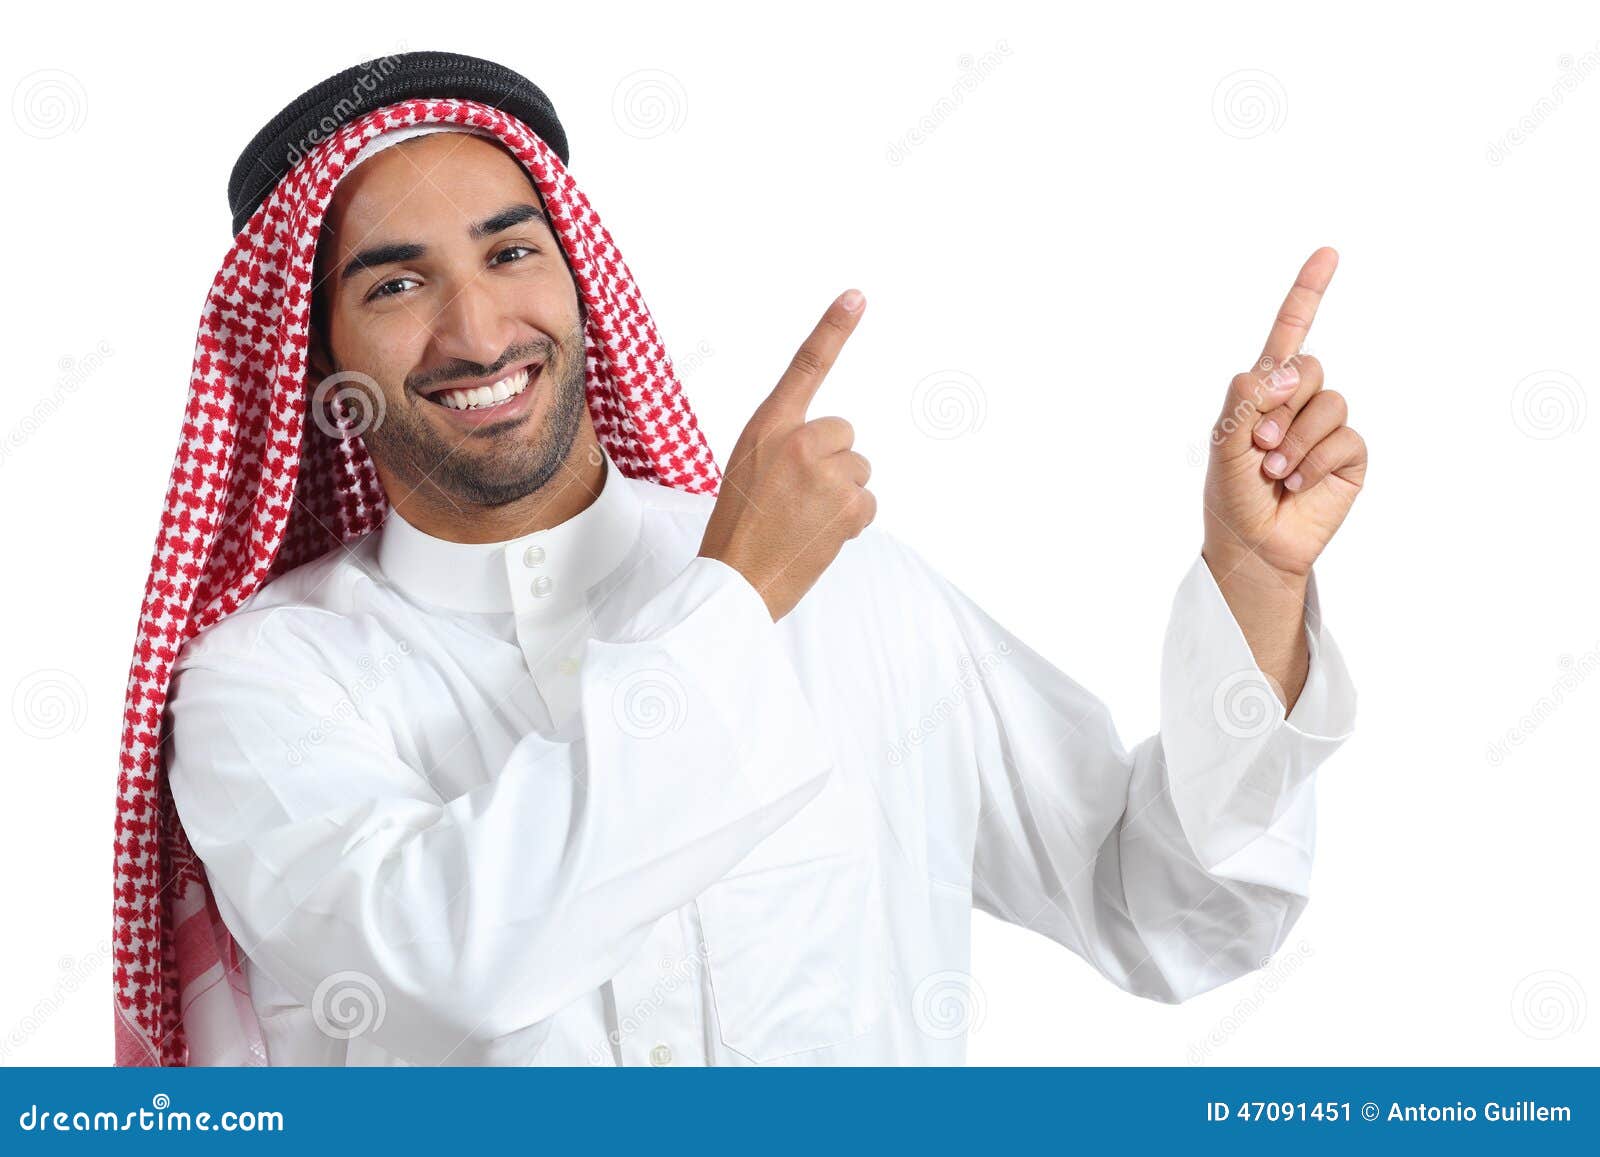 Arab saudi